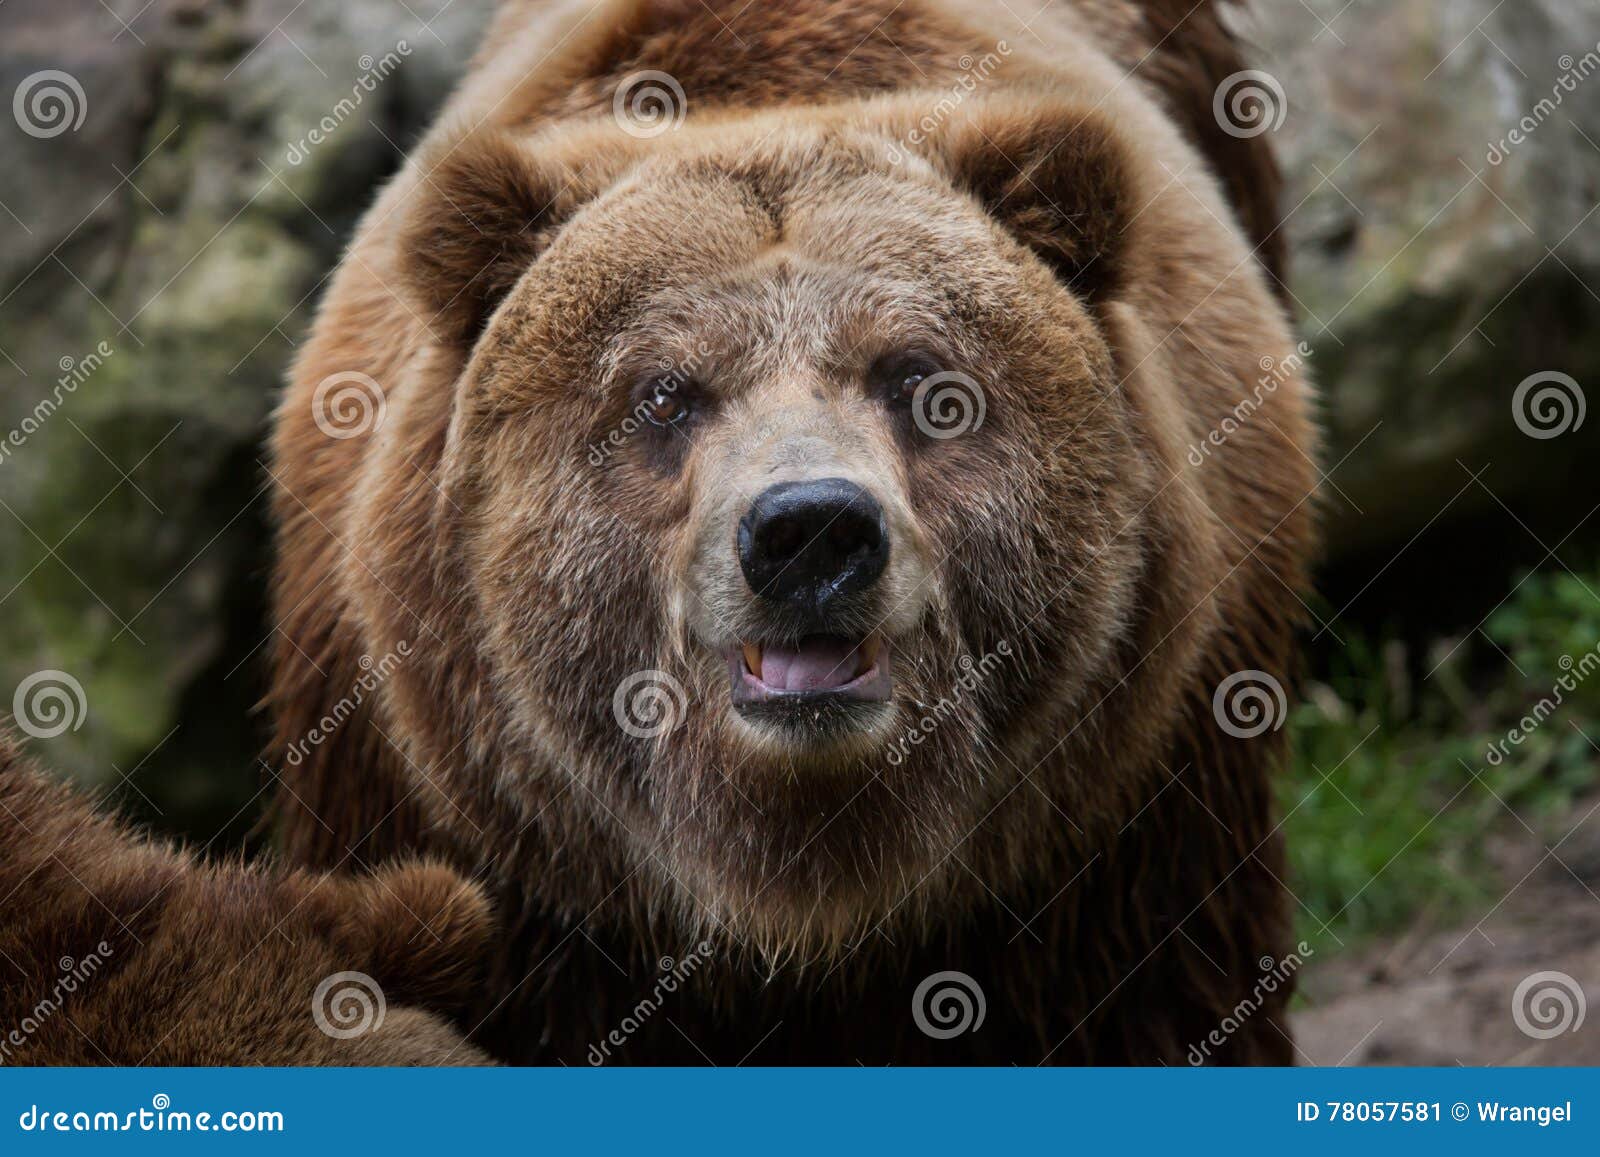 mainland grizzly (ursus arctos horribilis).